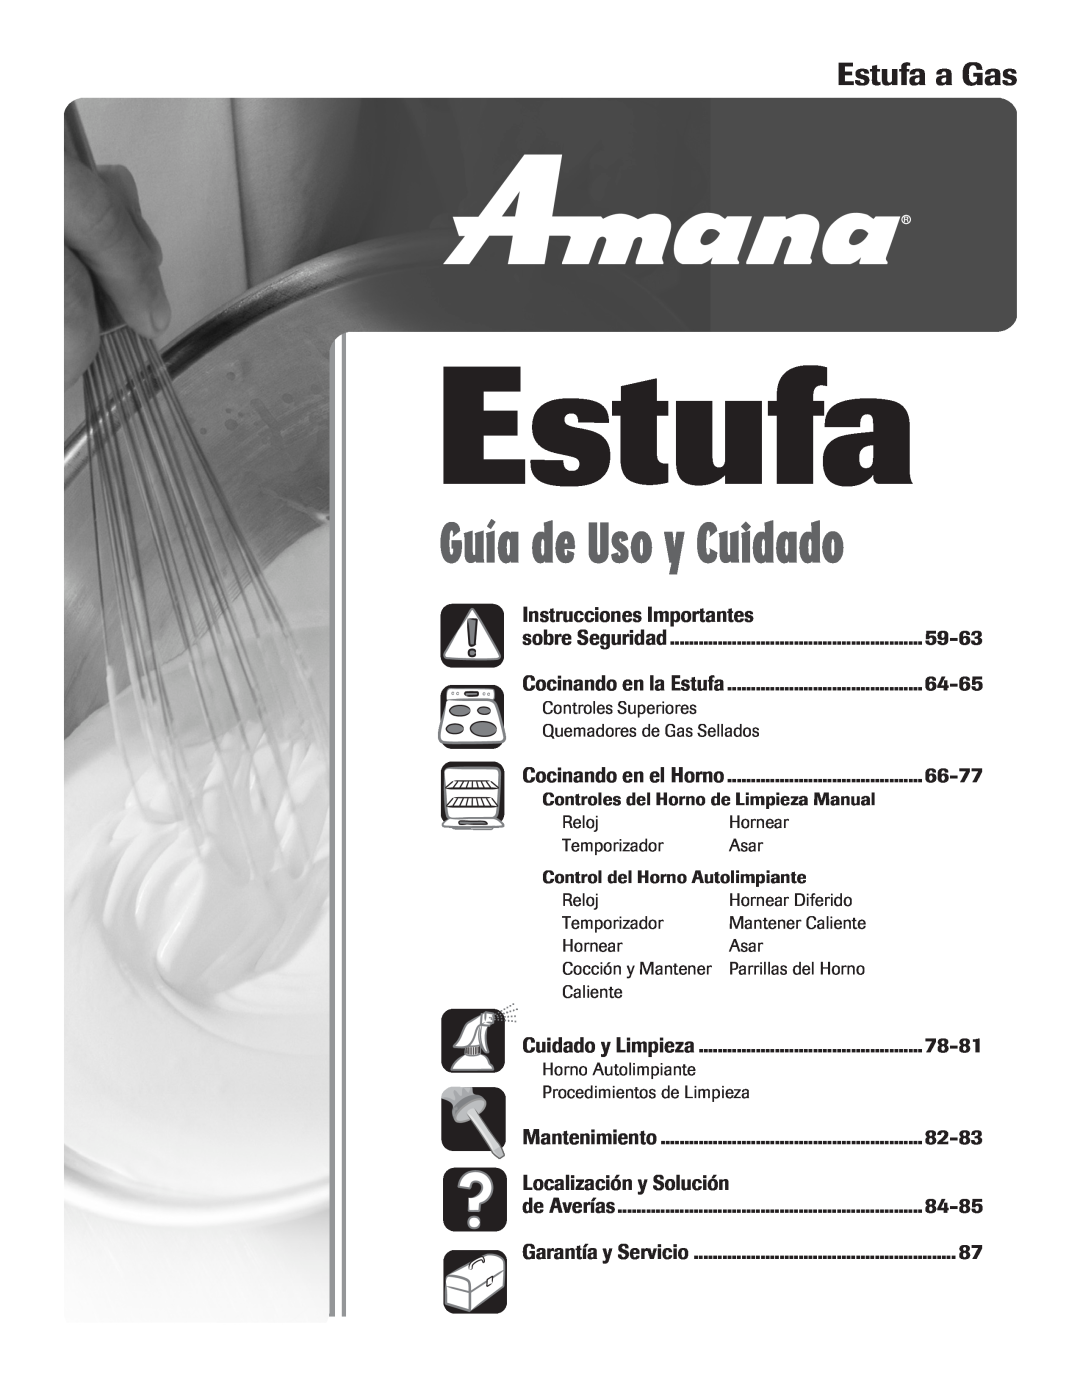 Amana 8113P515-60 Estufa a Gas, Instrucciones Importantes, 59-63, 64-65, 78-81, 82-83, Localización y Solución, 84-85 